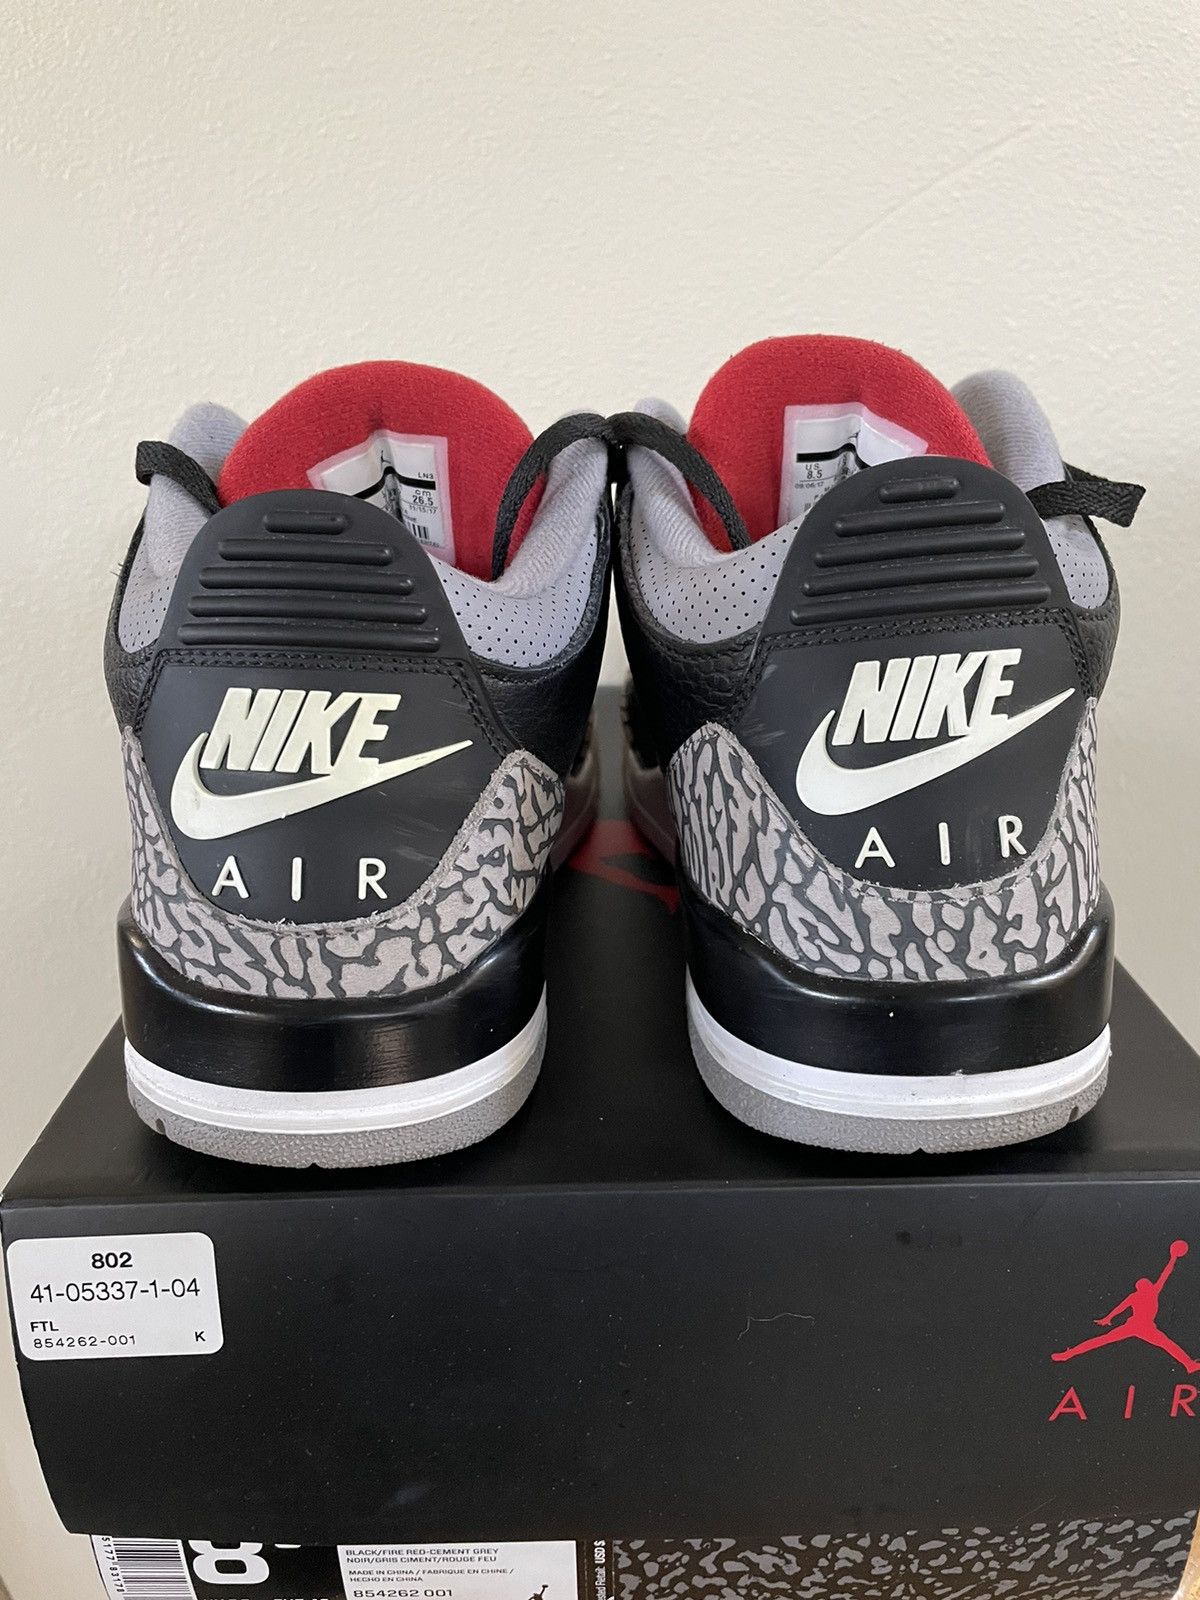 Pre-owned Jordan Nike Air Jordan 3 Black Cement 2017 Size 8.5 Shoes